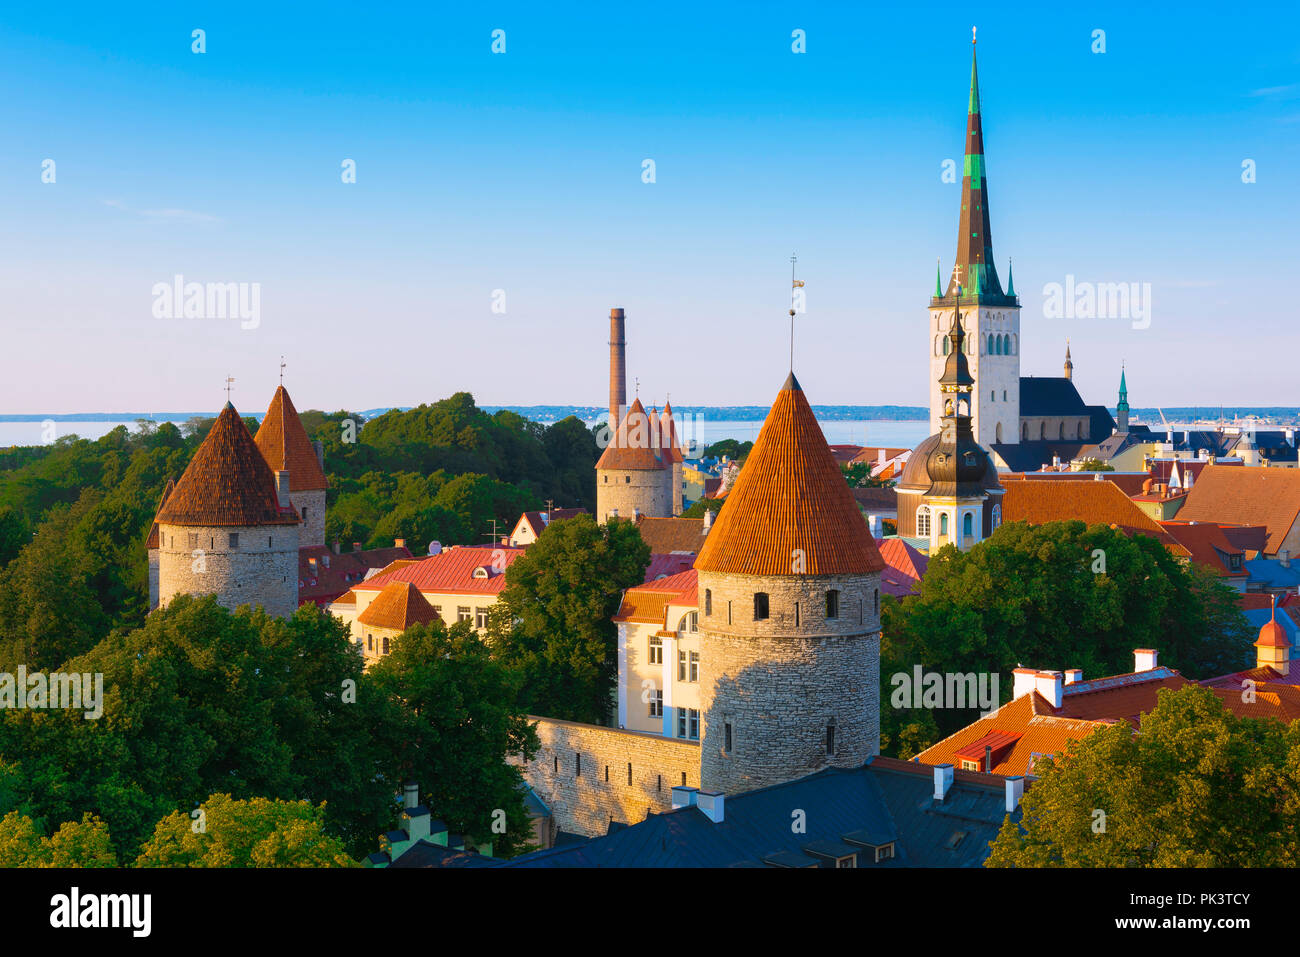 Tallinn Estonia, vista panoramica dello skyline della città medievale e delle torri con la chiesa di Sant'OLAF in lontananza, la città vecchia di Tallinn, Estonia. Foto Stock